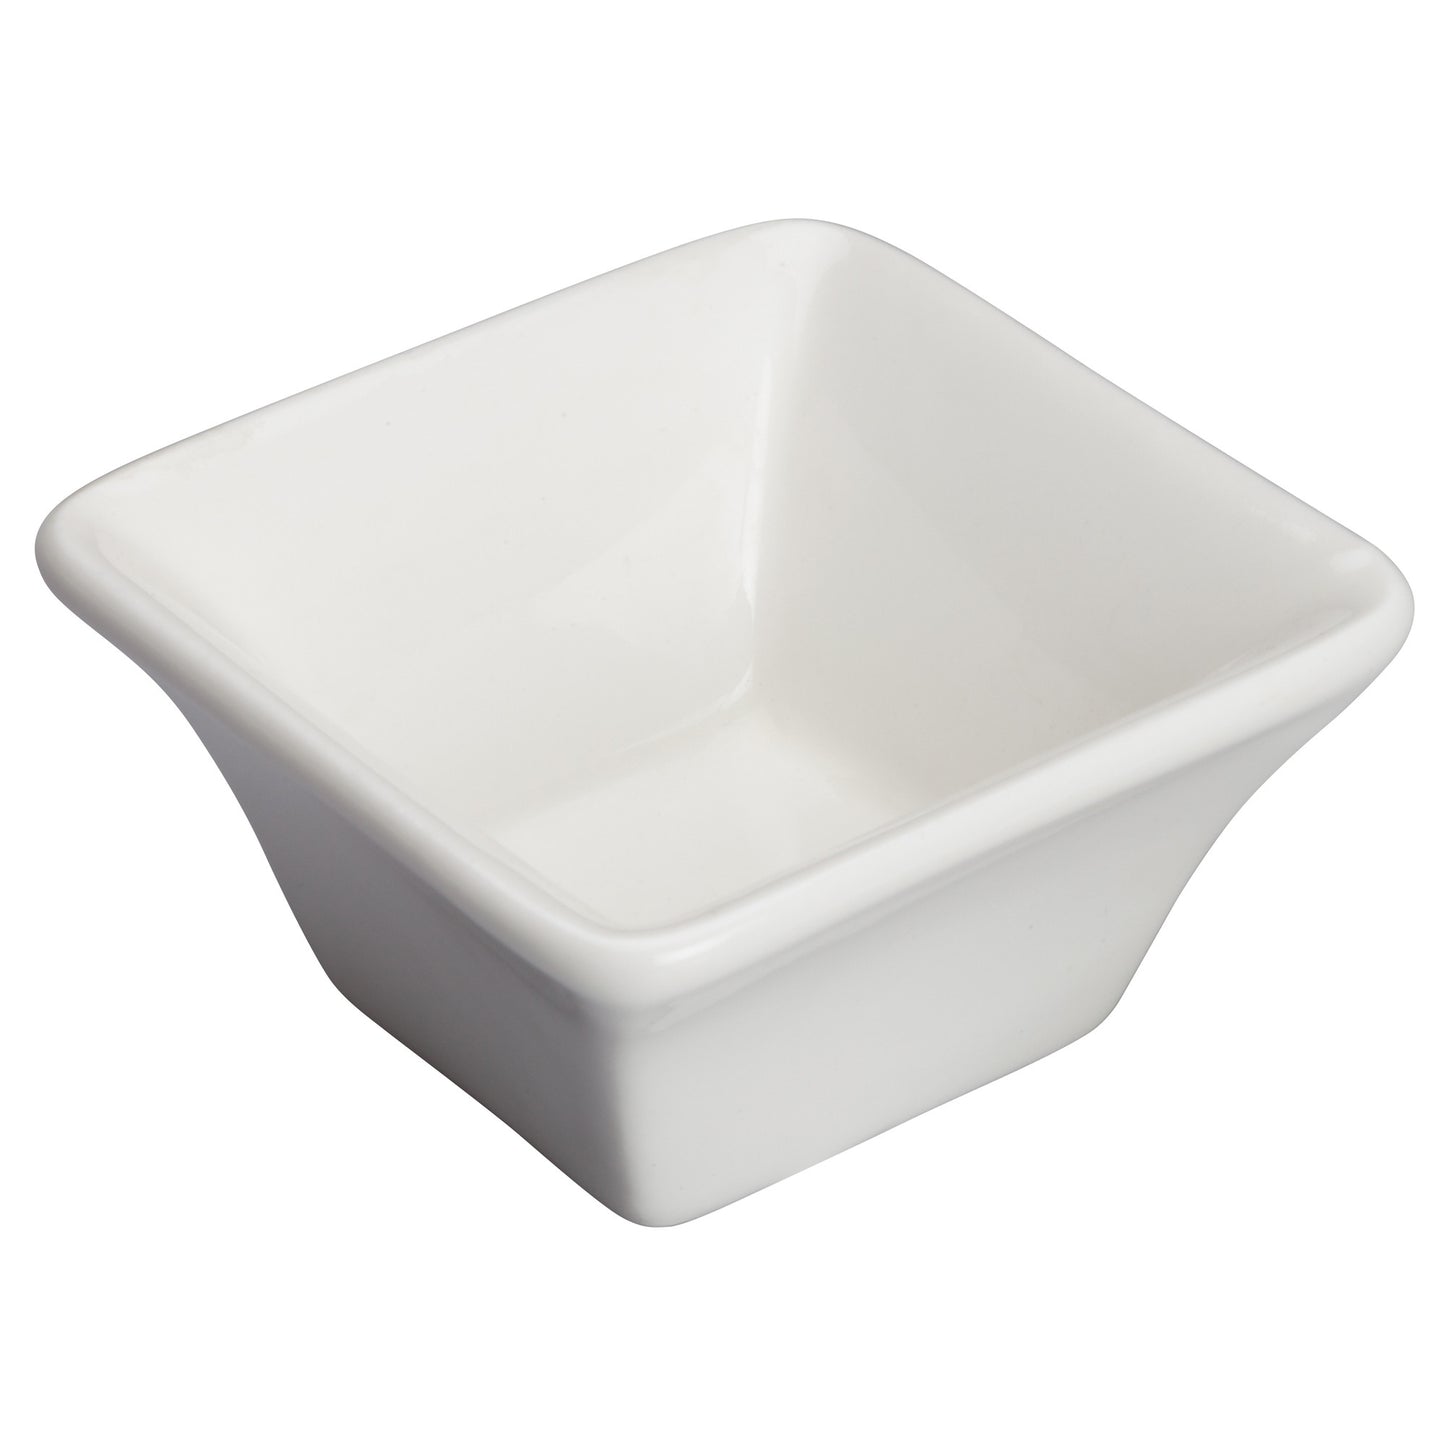 WDP021-104 - 2-1/2" Porcelain Square Mini Bowl, Bright White, 36 pcs/case